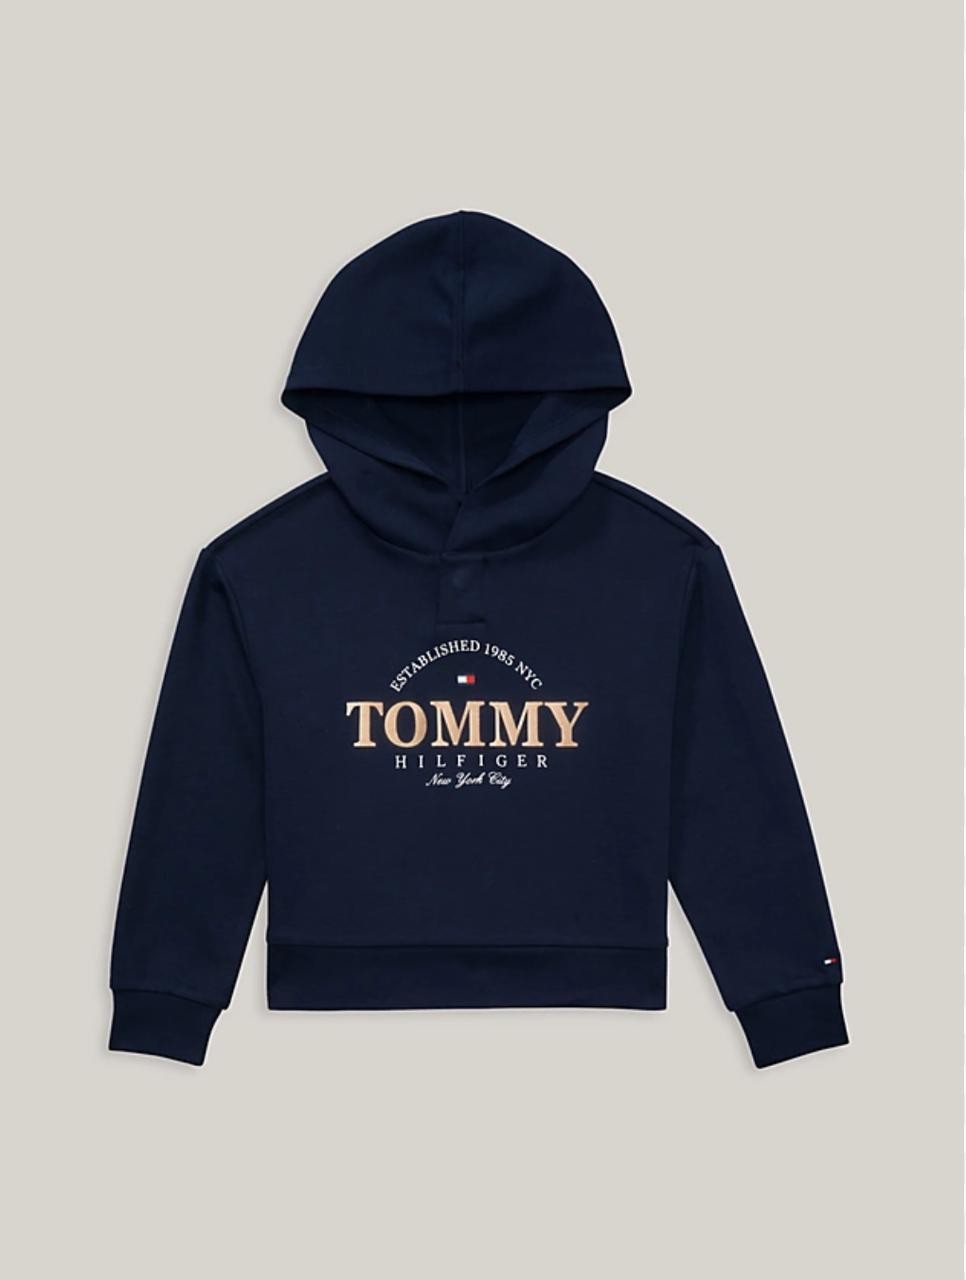 Tommy Hilfiger (6-7Yrs) Girls Sweatshirt